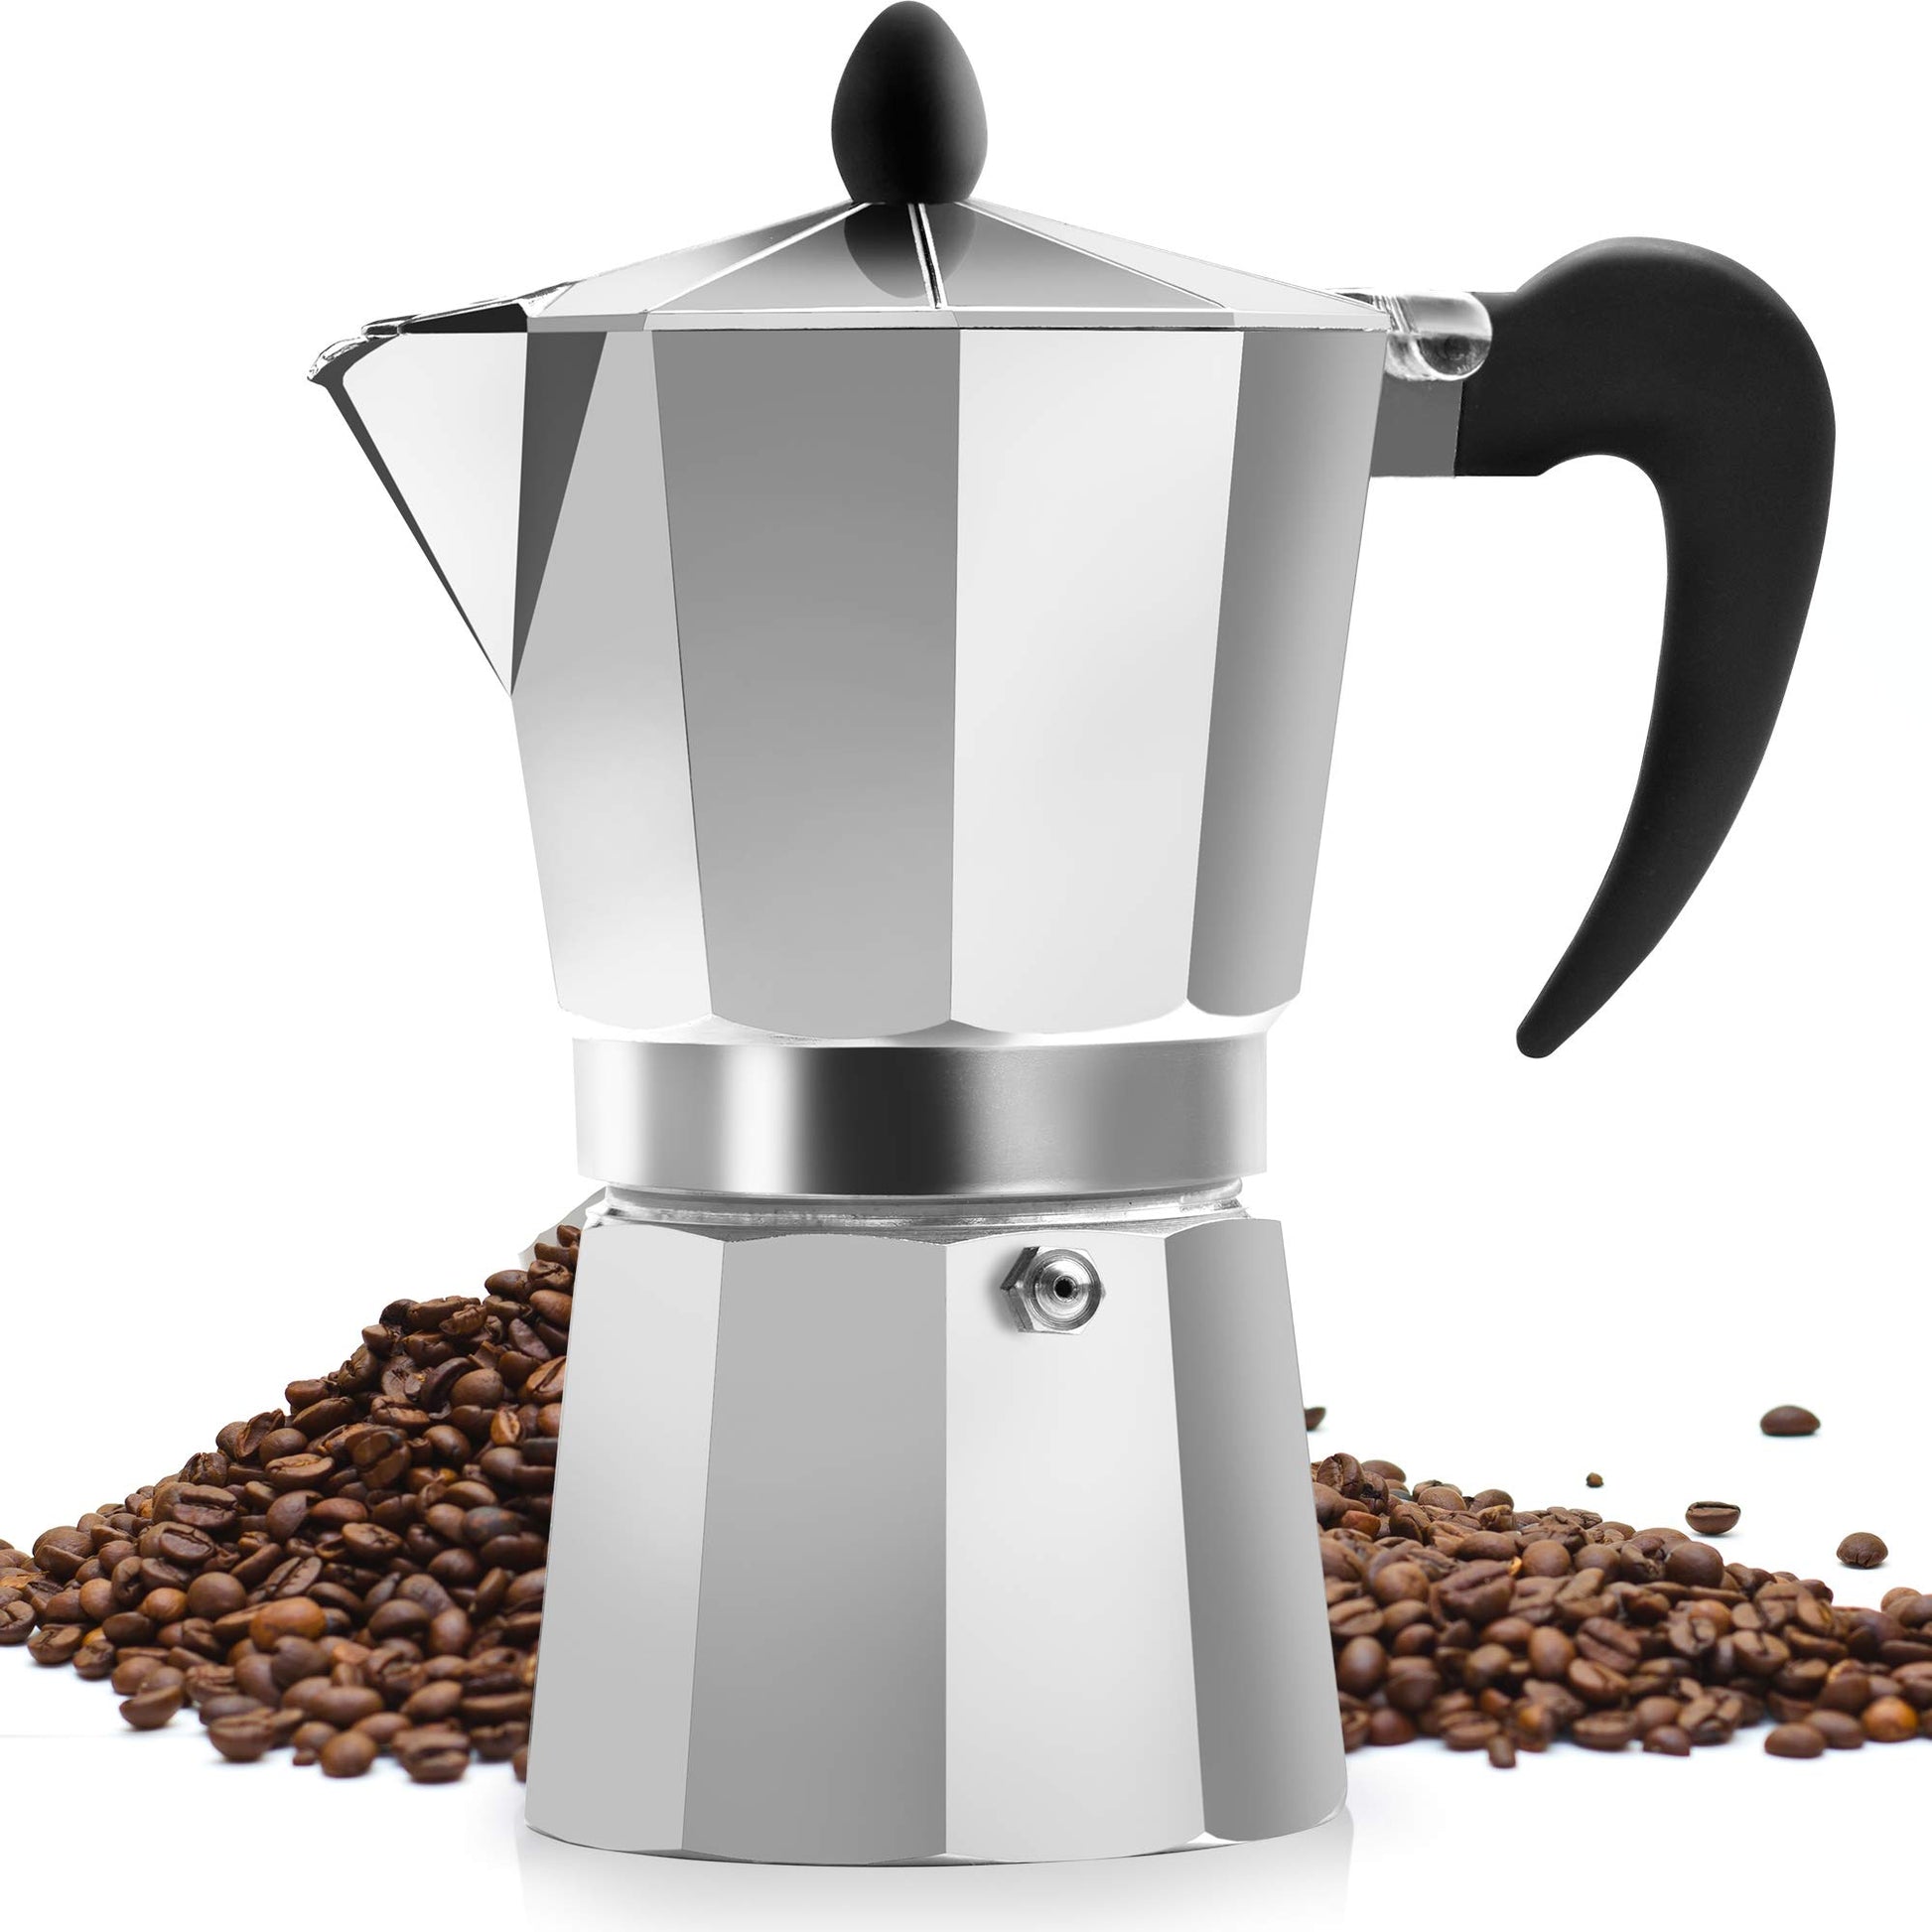 La Cafetiere Classic Gray 6 Cup Espresso Non Electric Coffee Maker